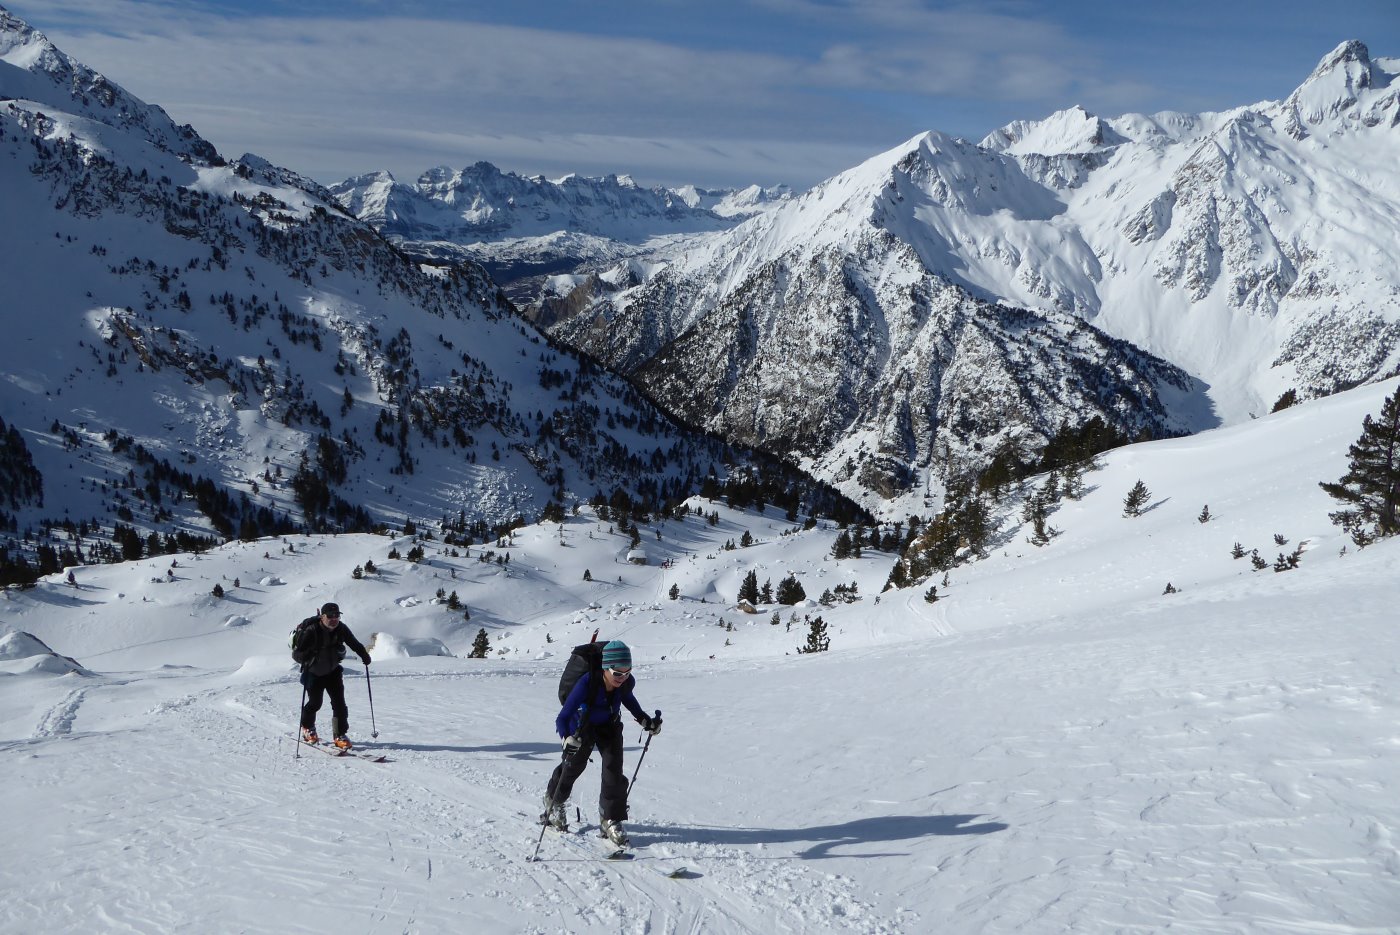 ¿Cómo lo hace la gente para intentar esquiar sin incumplir las normativas Covid?